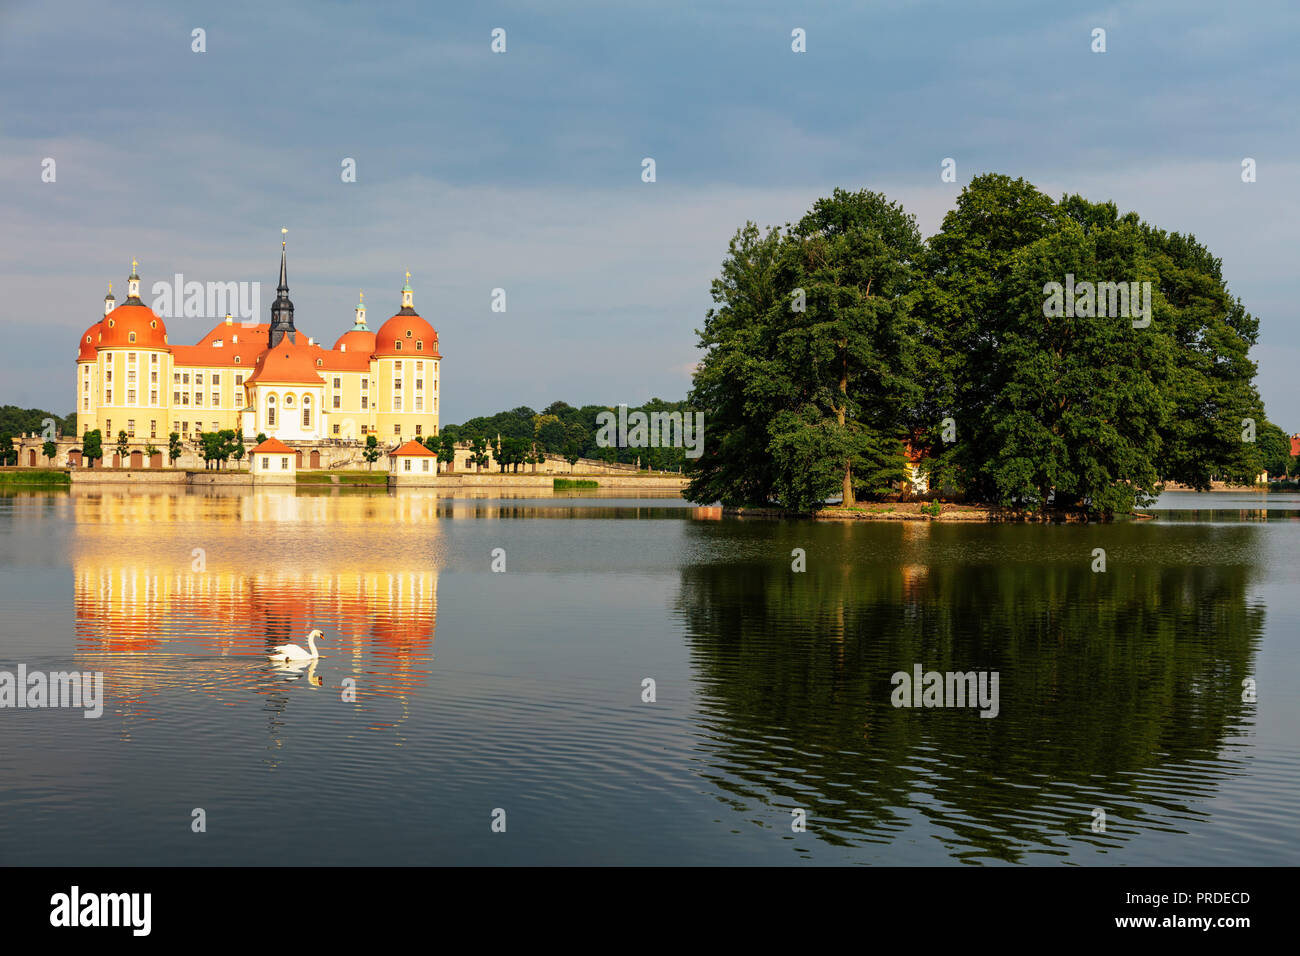 Europe, Germany, Saxony, Moritzburg castle Stock Photo